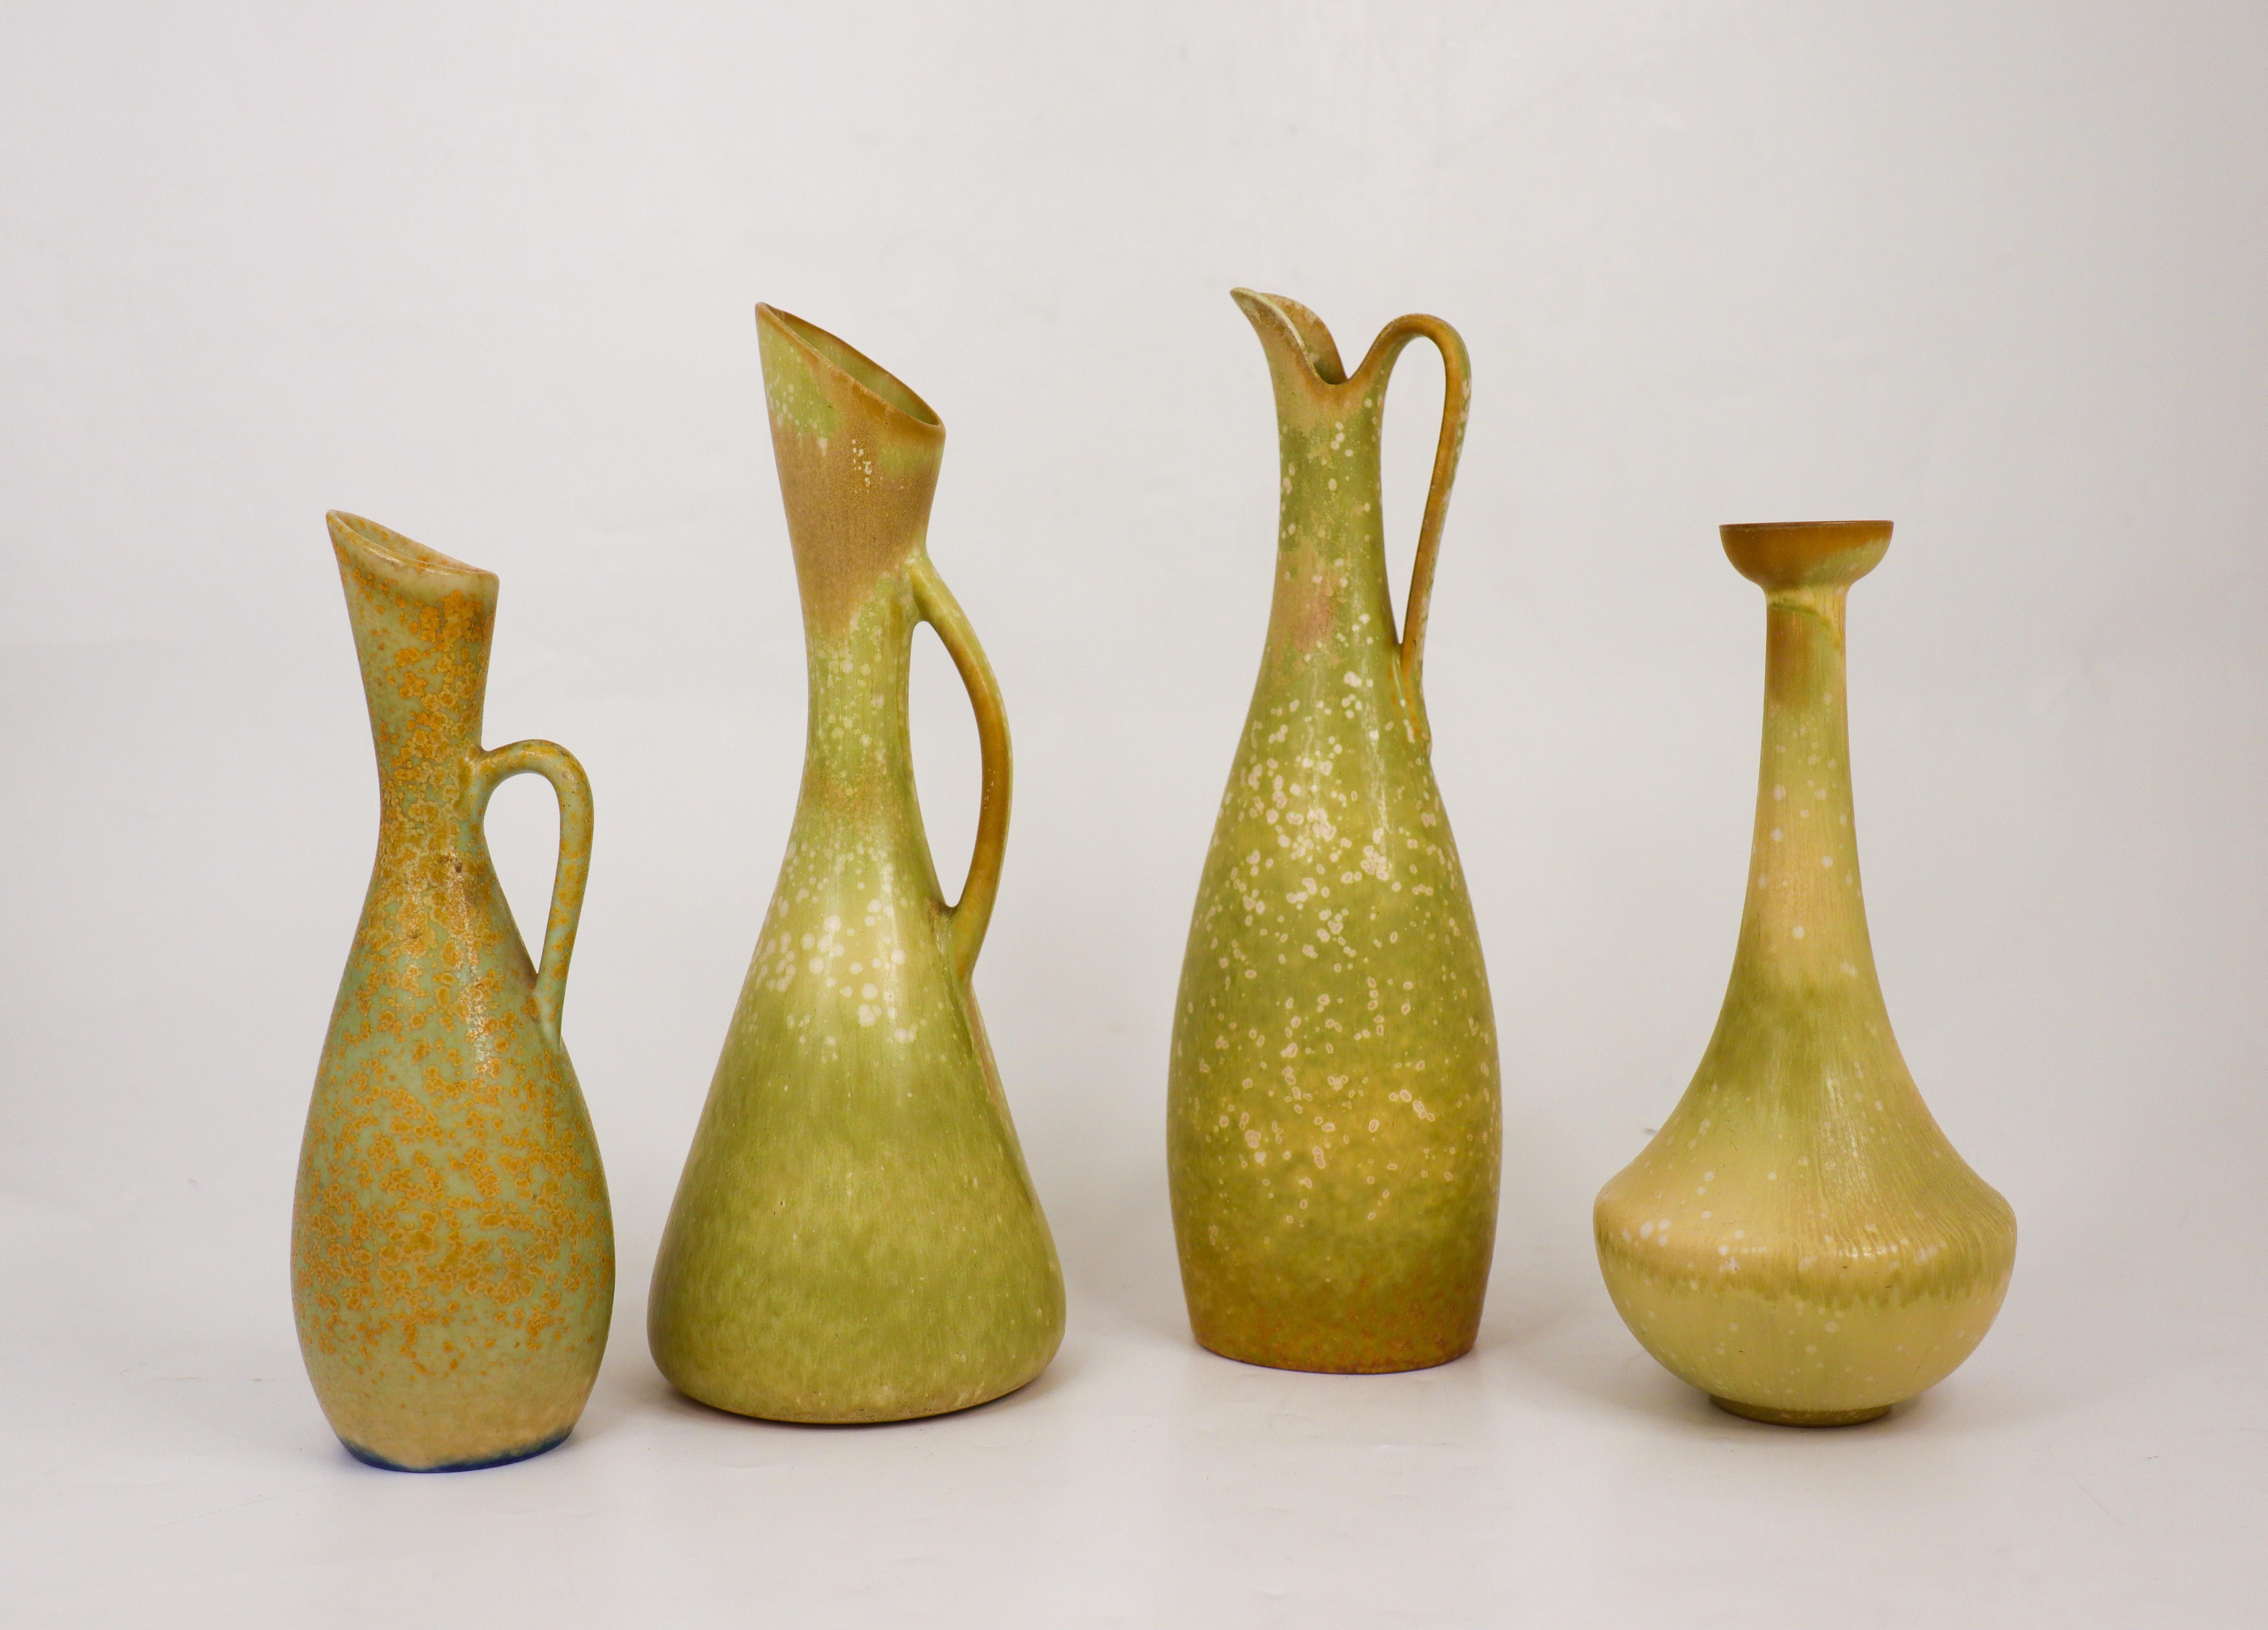 Eine Gruppe von vier grünen Vasen mit einer wunderschönen Glasur, entworfen von Gunnar Nylund und Carl-Harry Stålhane in den 1950er Jahren bei Rörstrand. Die Vasen sind zwischen  19 - 24,5 cm hoch und in ausgezeichnetem Zustand. Die Vase von